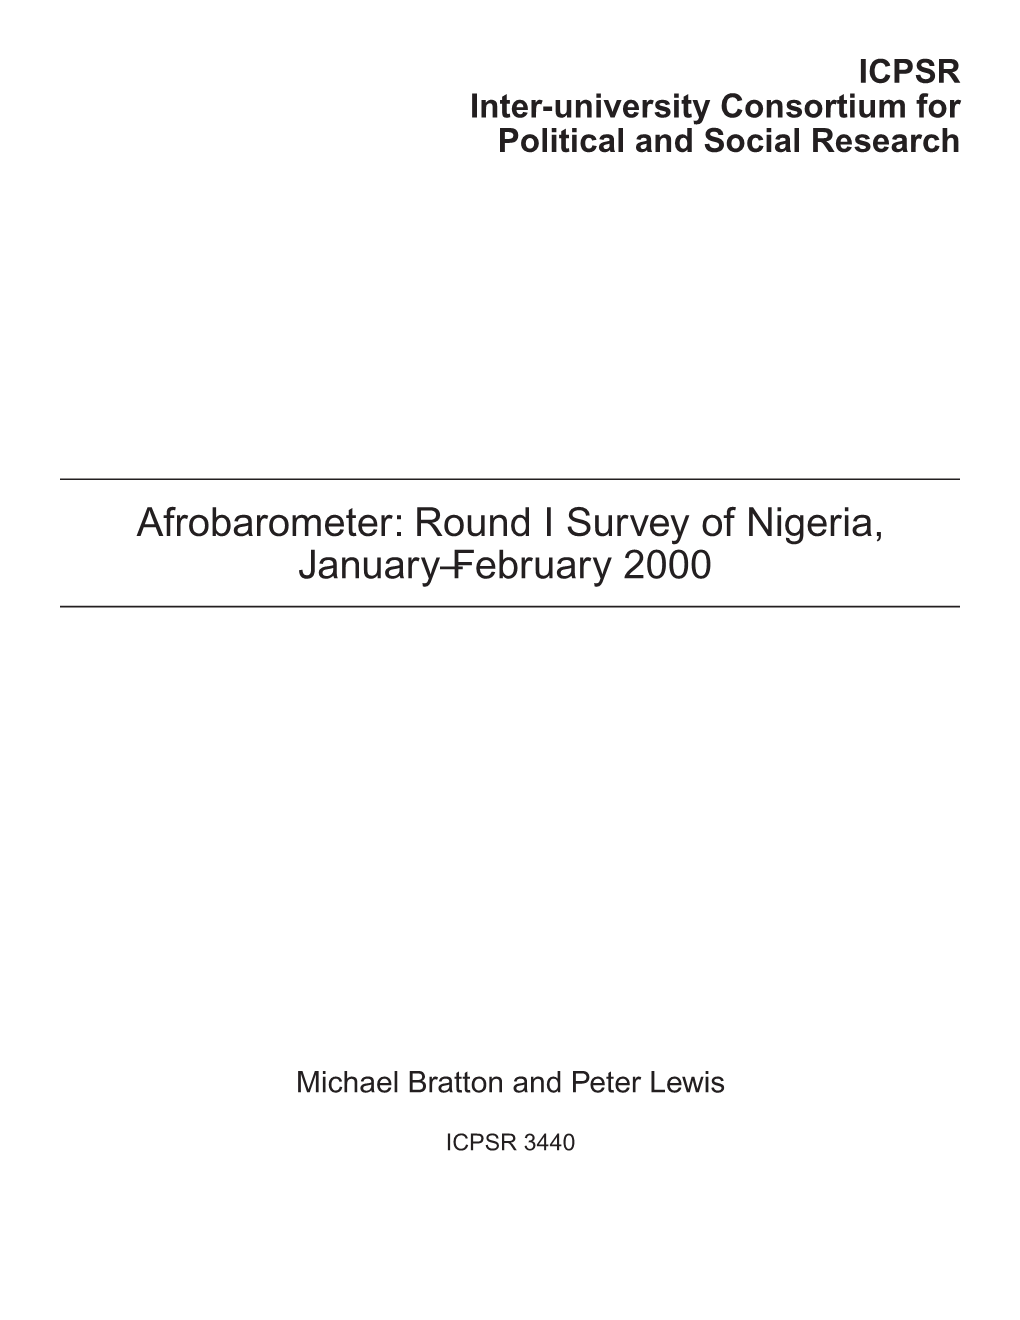 Afrobarometer: Round I Survey of Nigeria, January–February 2000